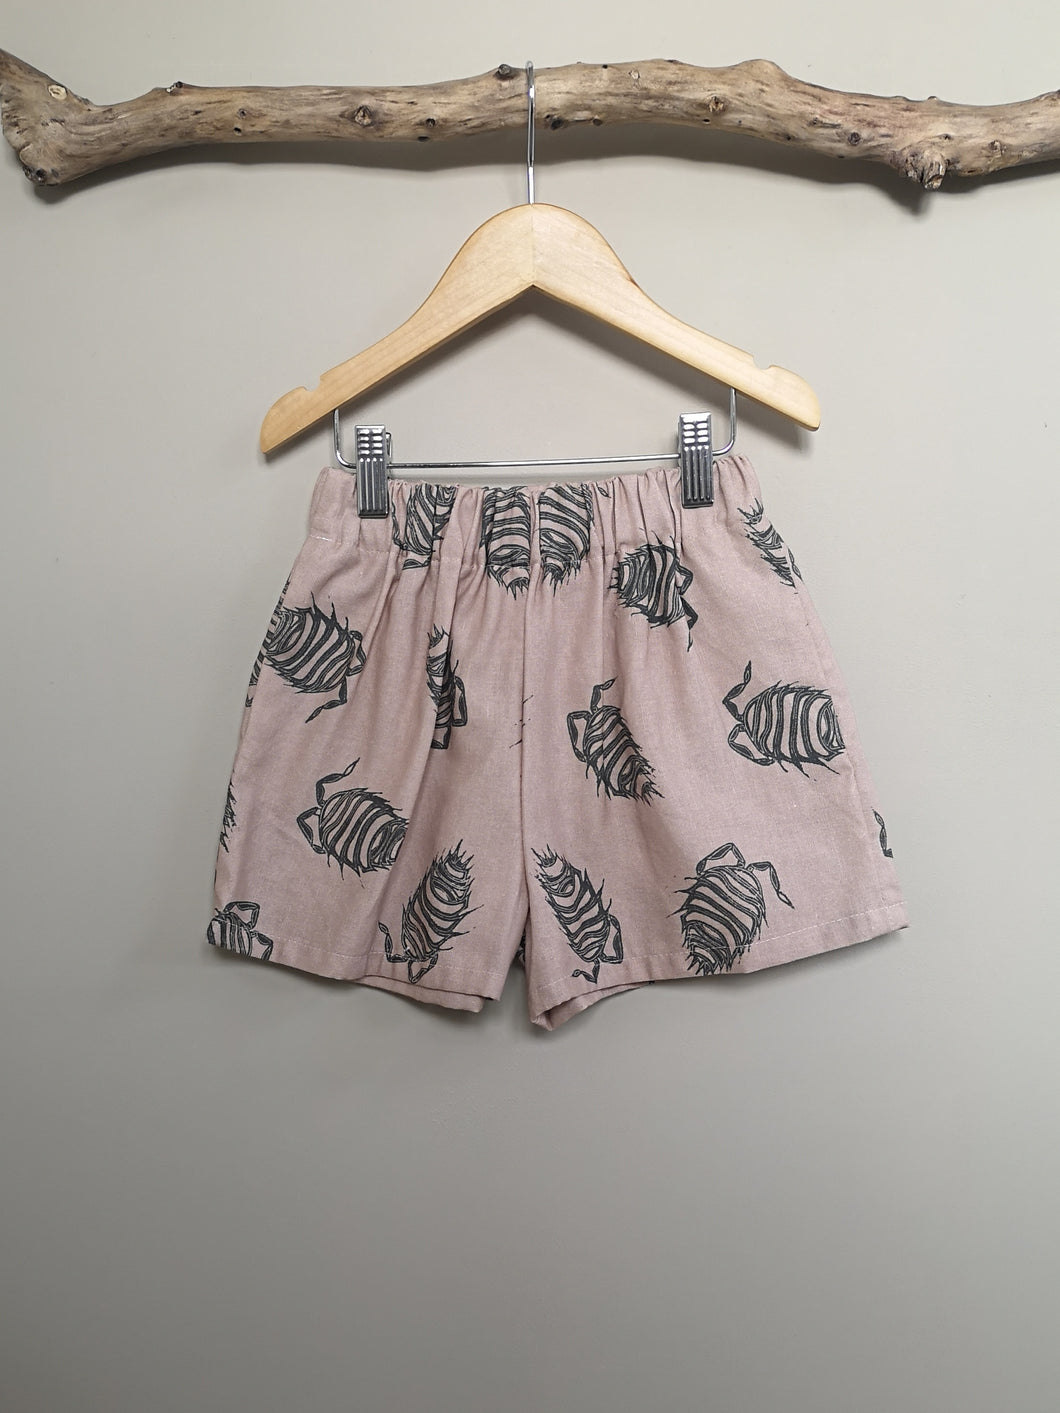 Woodlouse Print Linen/Cotton Children's Shorts